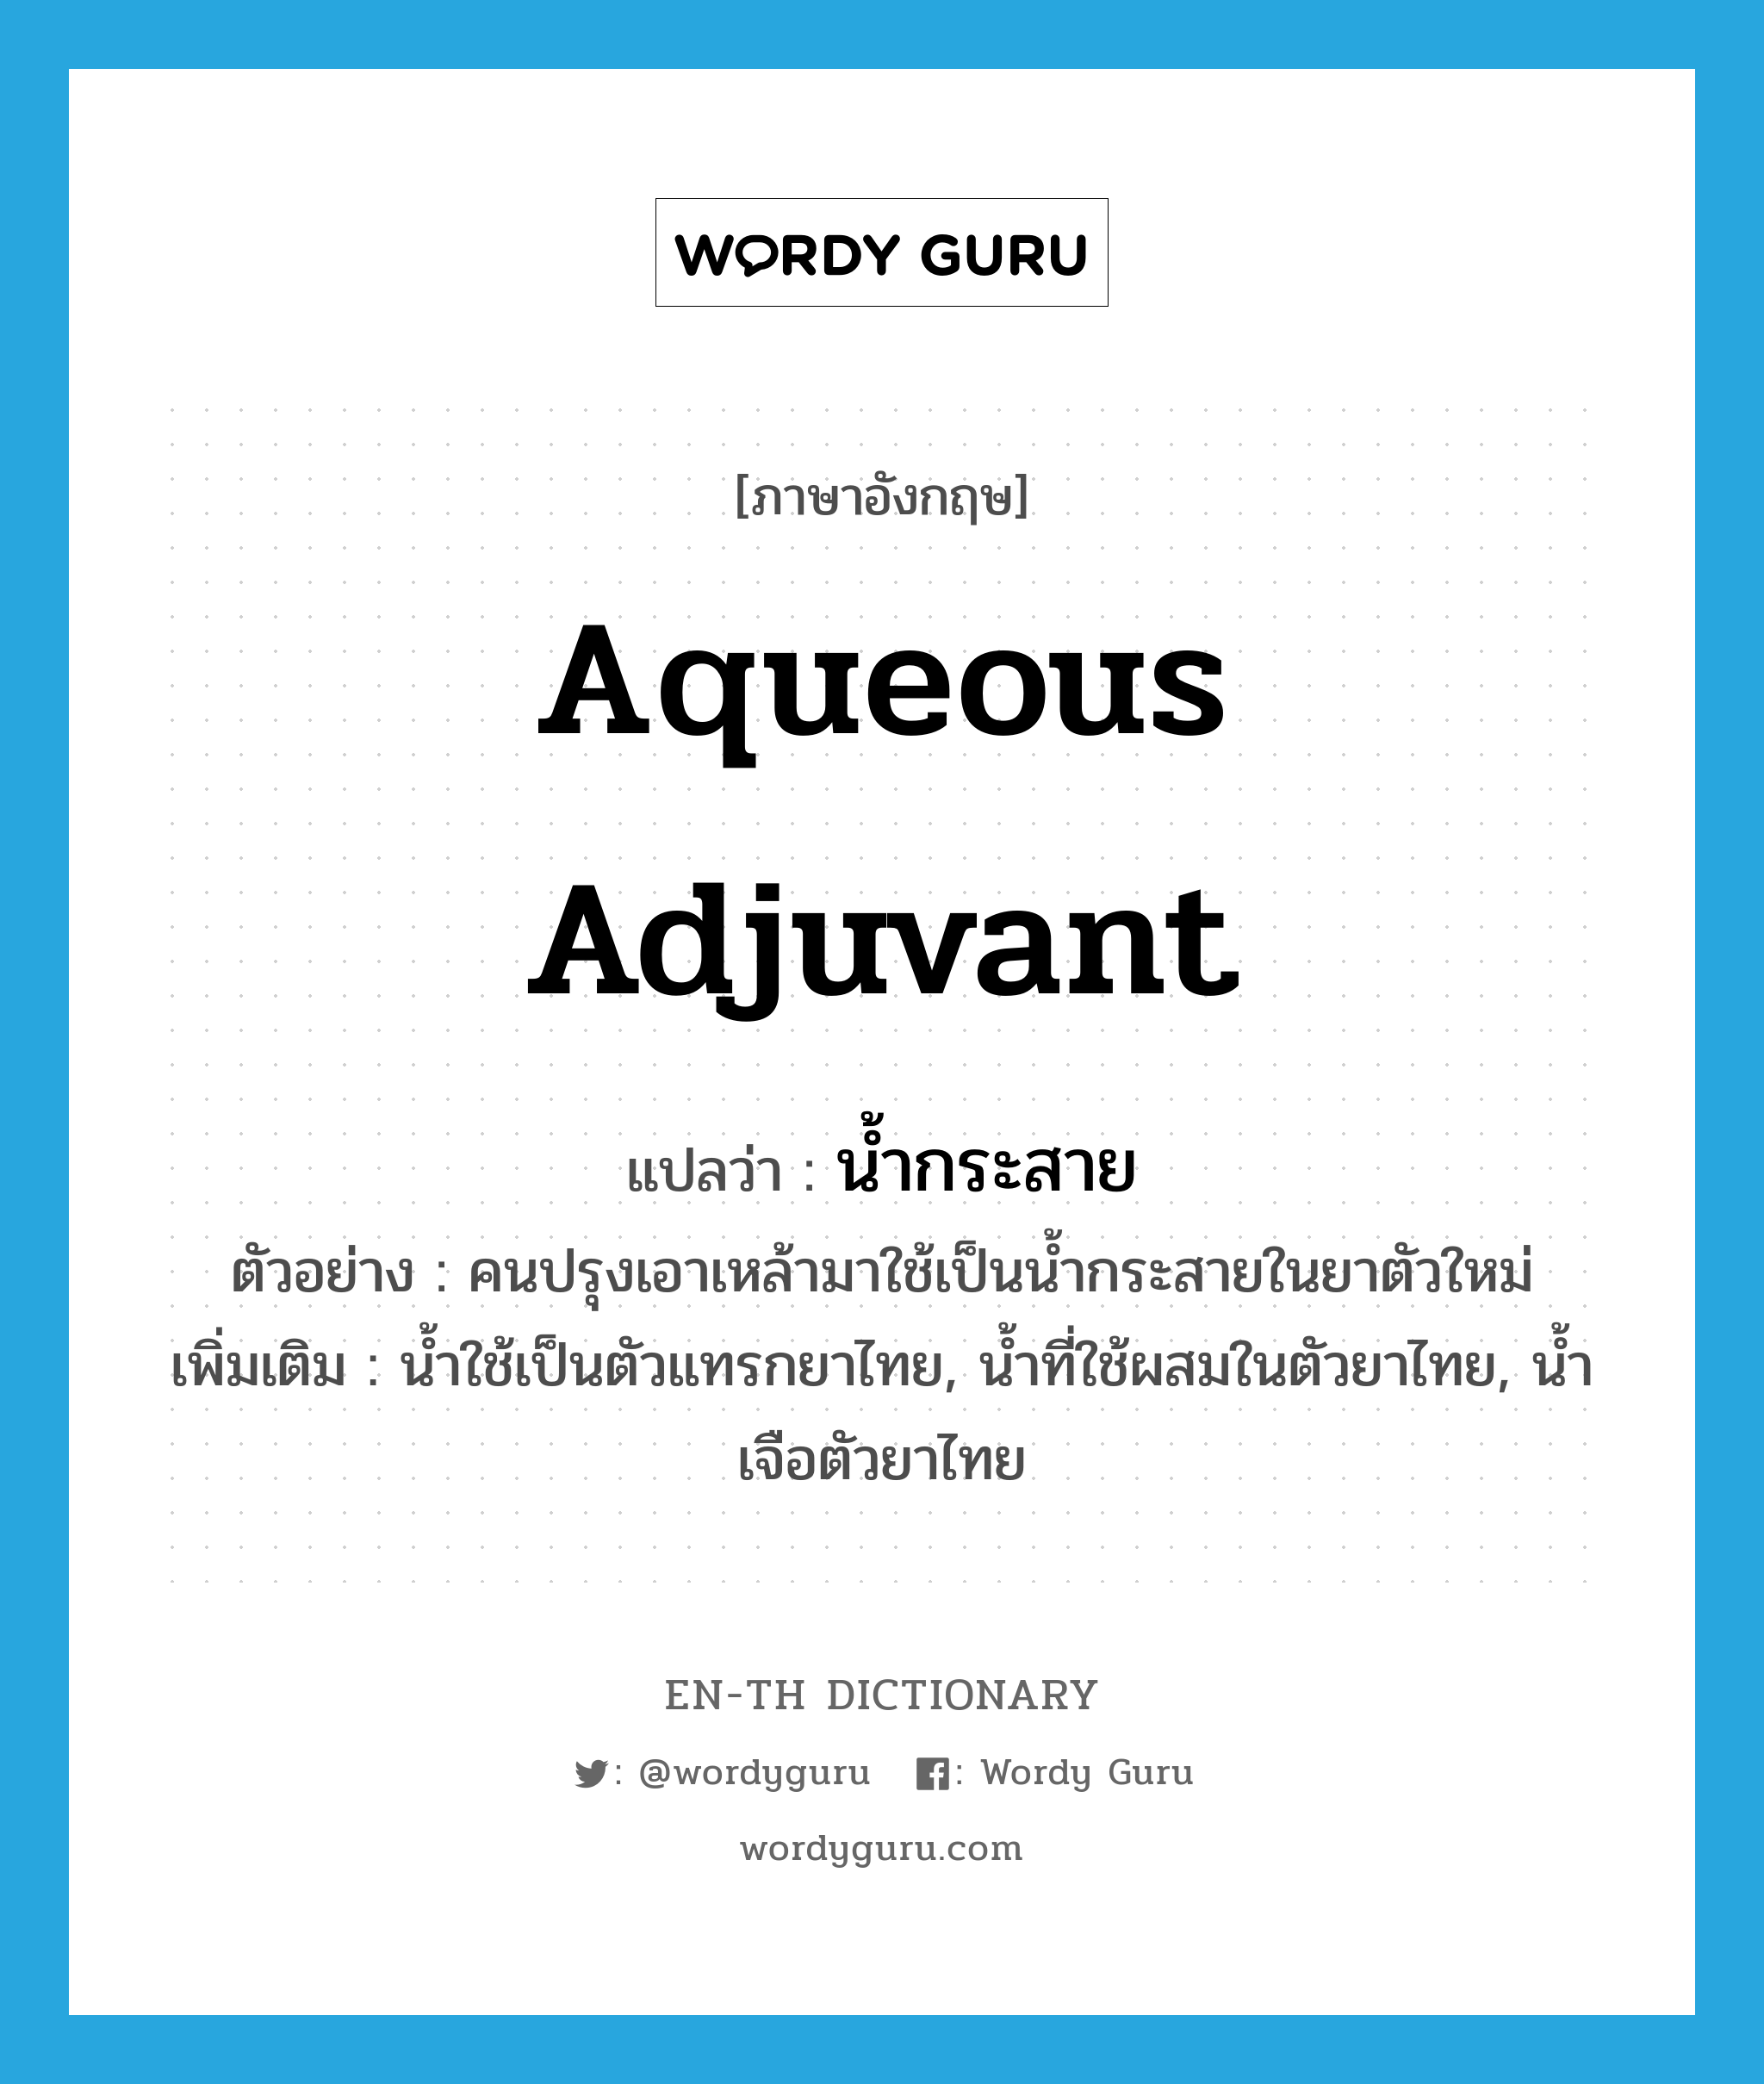 aqueous adjuvant แปลว่า?, คำศัพท์ภาษาอังกฤษ aqueous adjuvant แปลว่า น้ำกระสาย ประเภท N ตัวอย่าง คนปรุงเอาเหล้ามาใช้เป็นน้ำกระสายในยาตัวใหม่ เพิ่มเติม น้ำใช้เป็นตัวแทรกยาไทย, น้ำที่ใช้ผสมในตัวยาไทย, น้ำเจือตัวยาไทย หมวด N